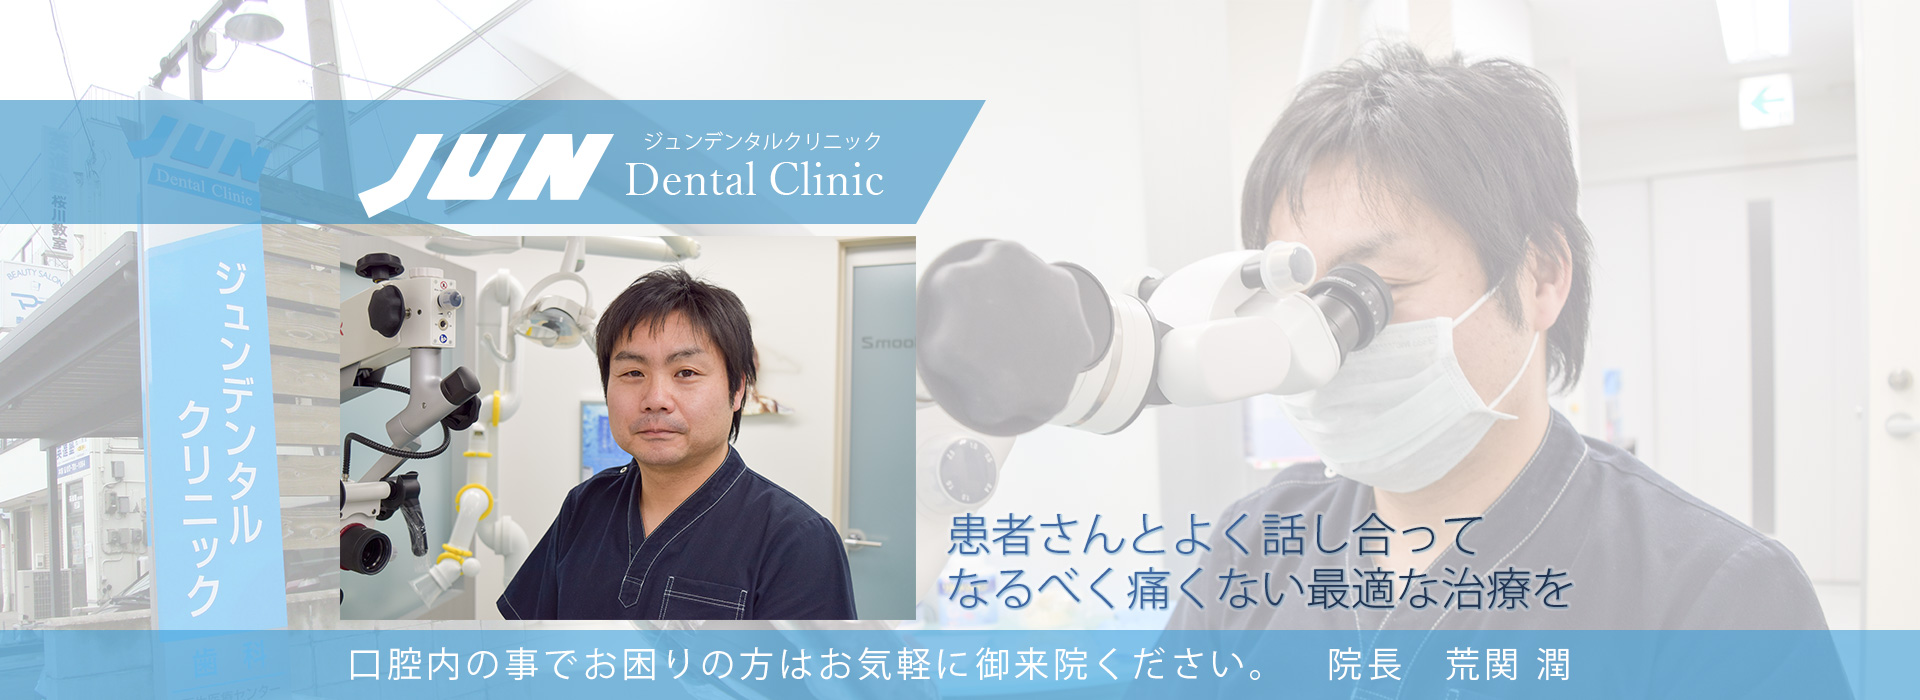 青森市にある歯医者 - Jun Dental Clinic - ジュンデンタルクリニック